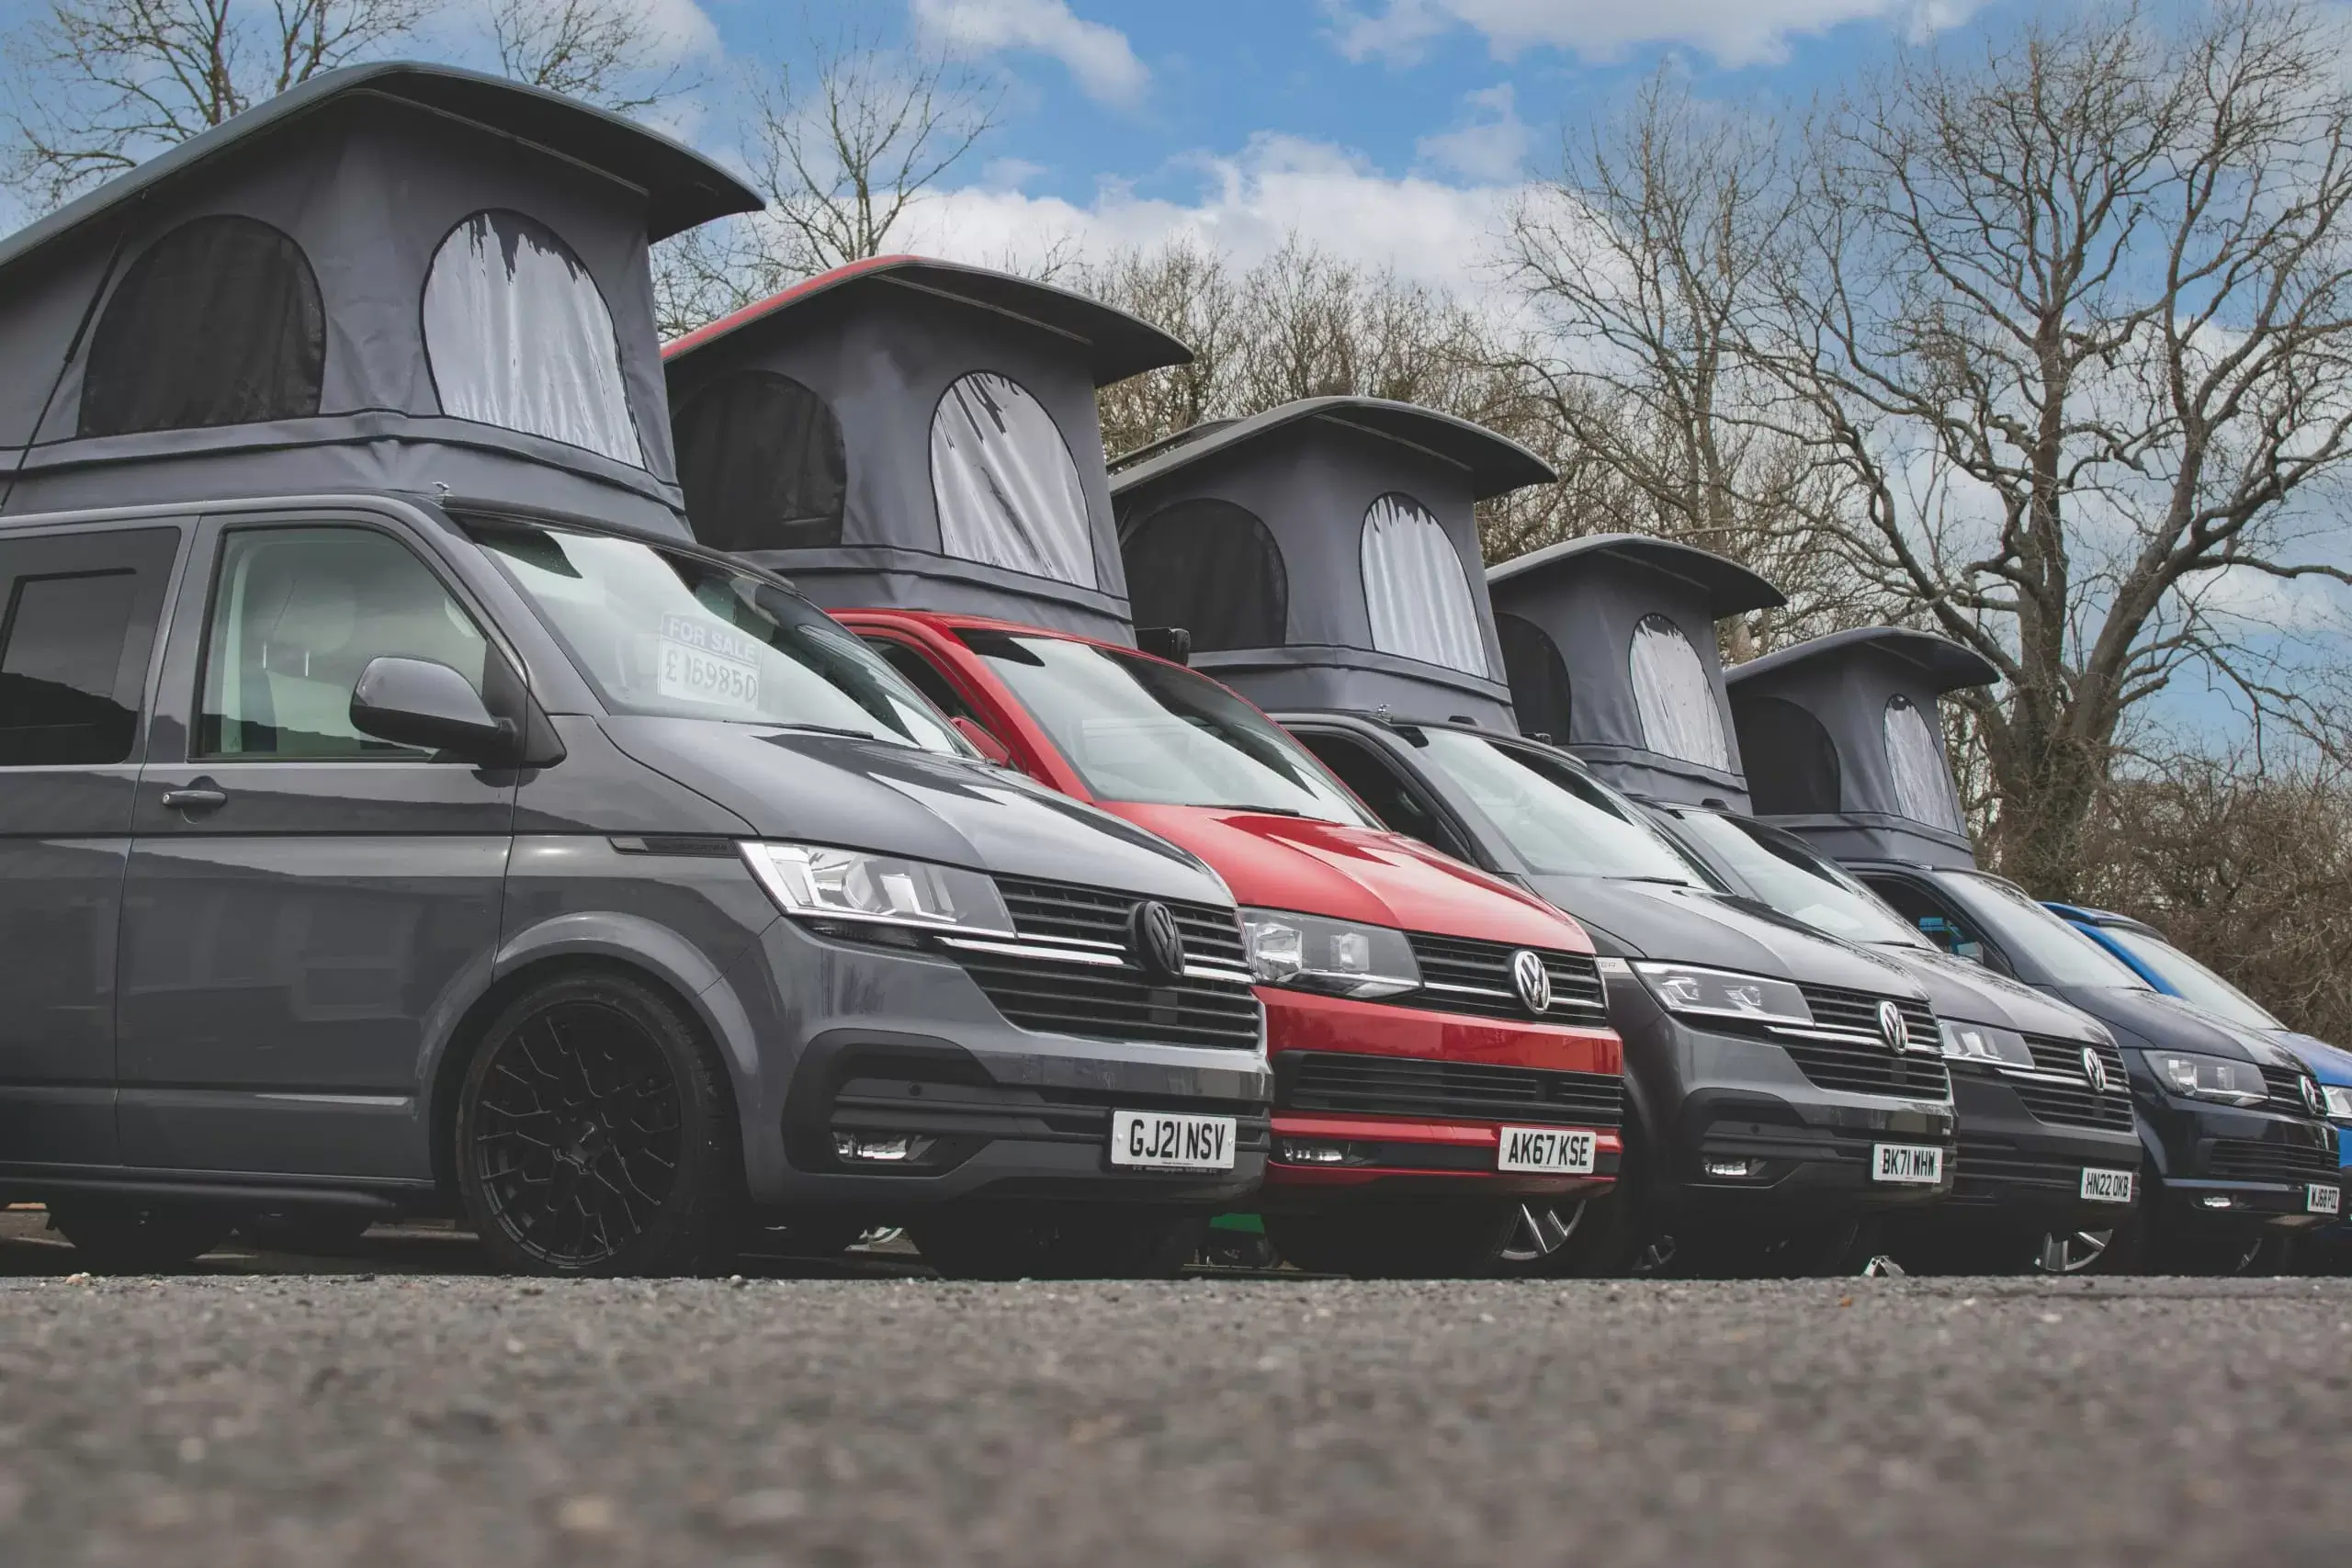 Range of VW Campervan